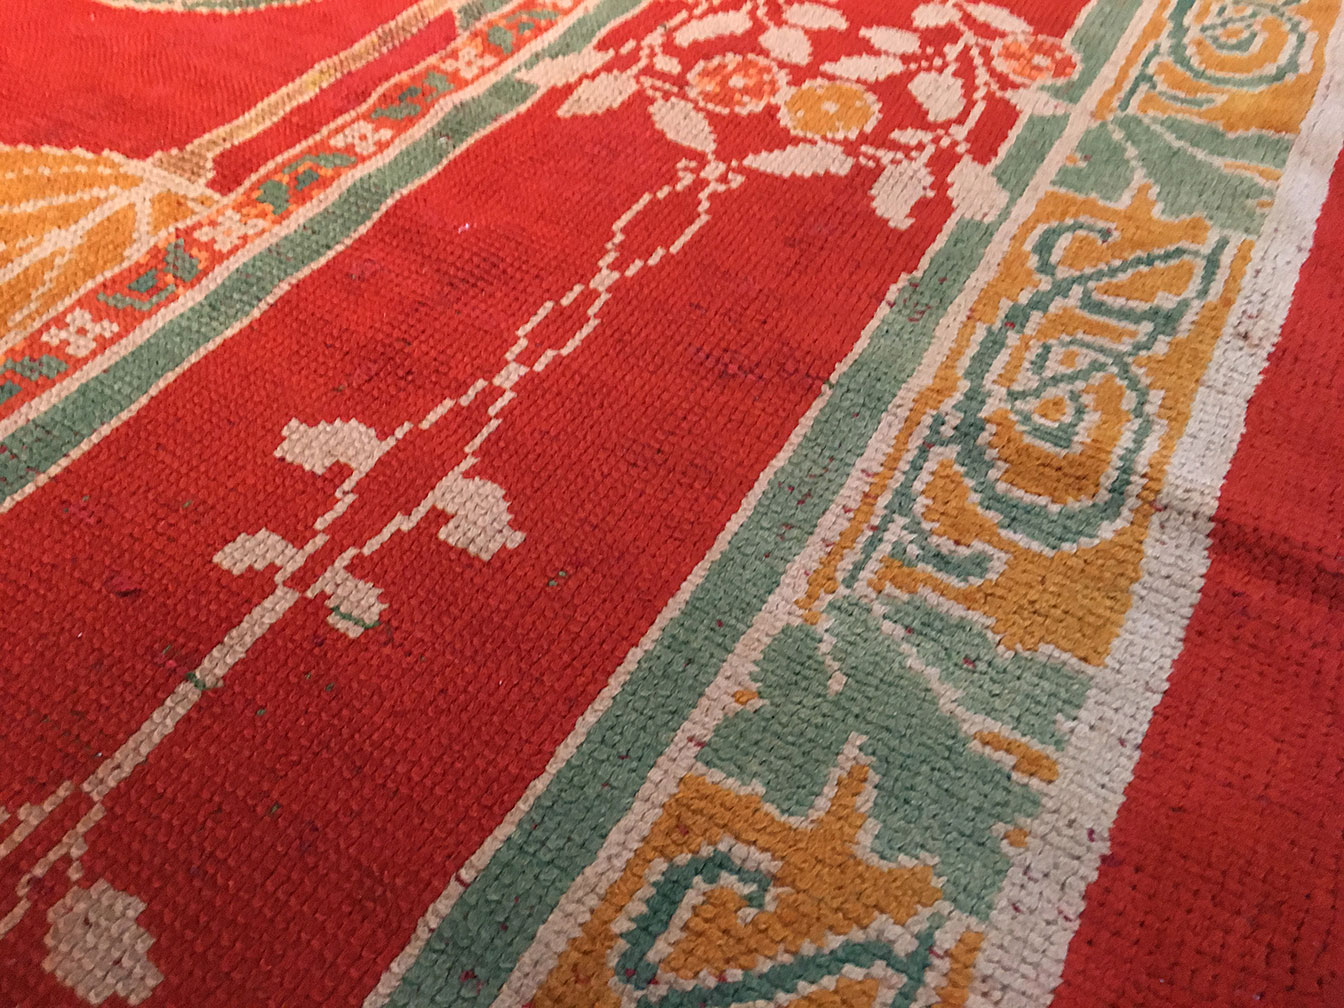 Antique donegal Carpet - # 52975